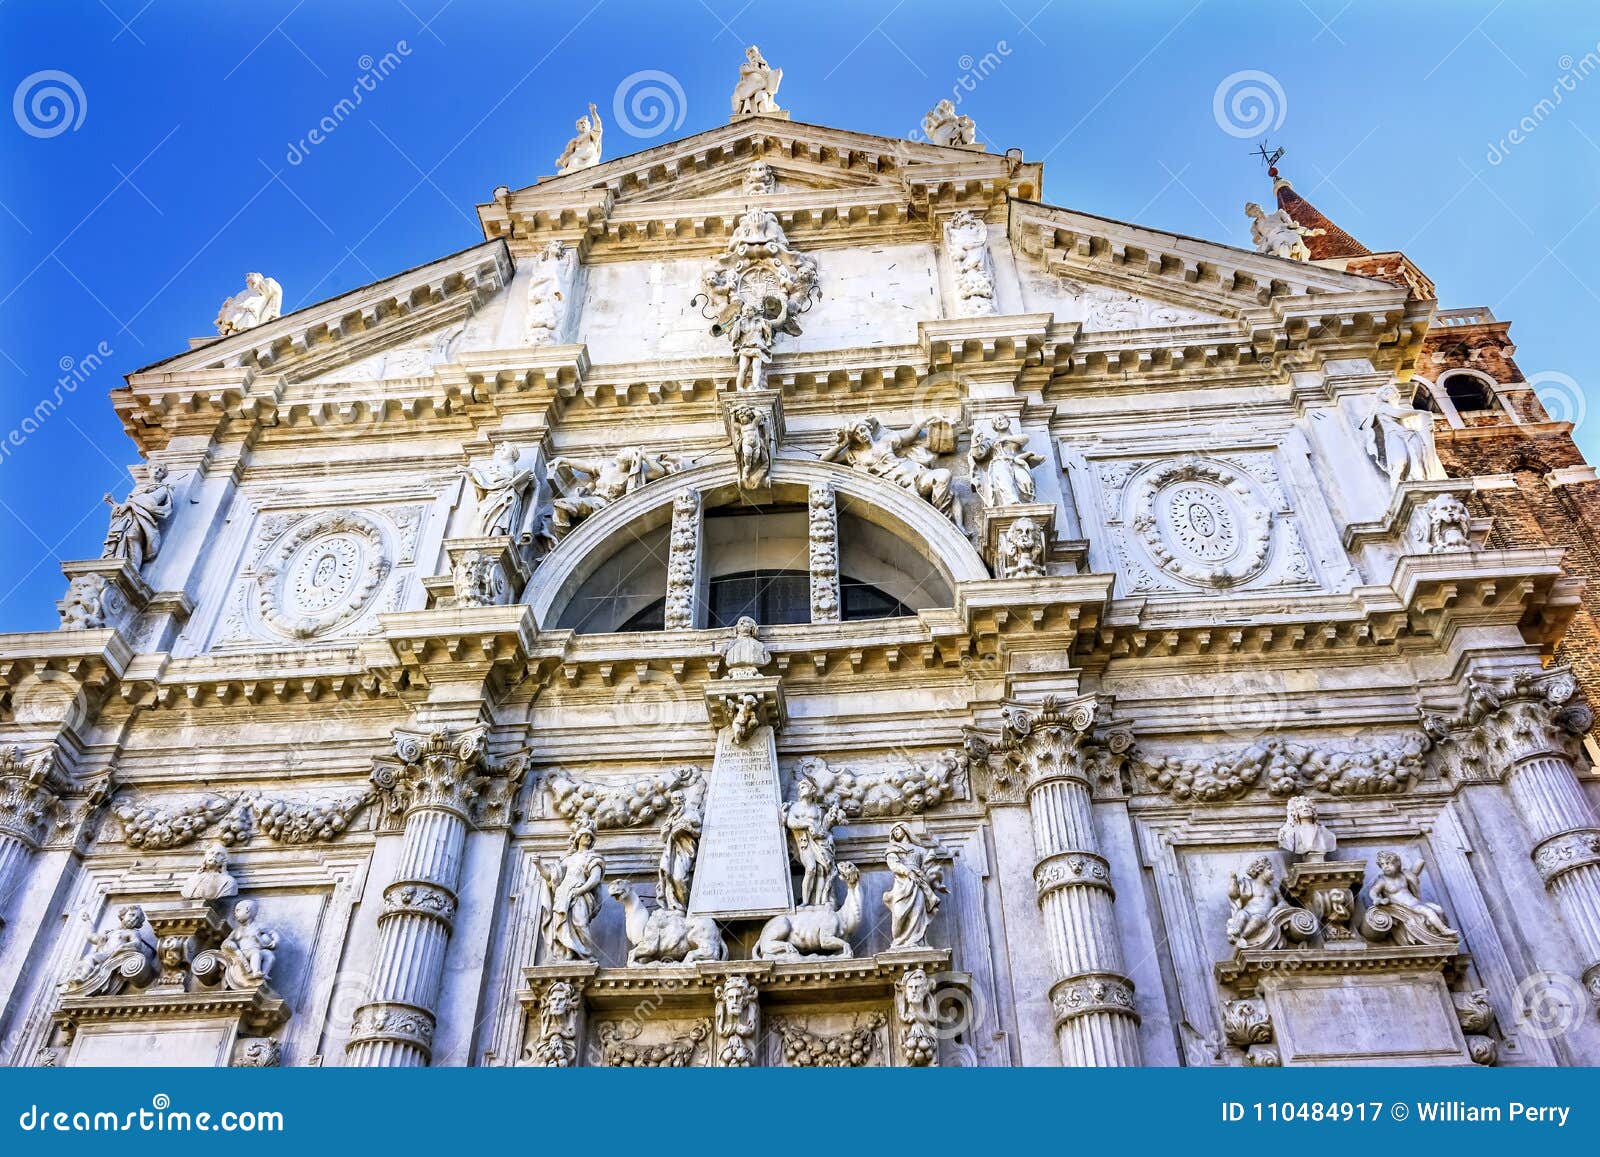 san moise profeta church baroque facade venice italy